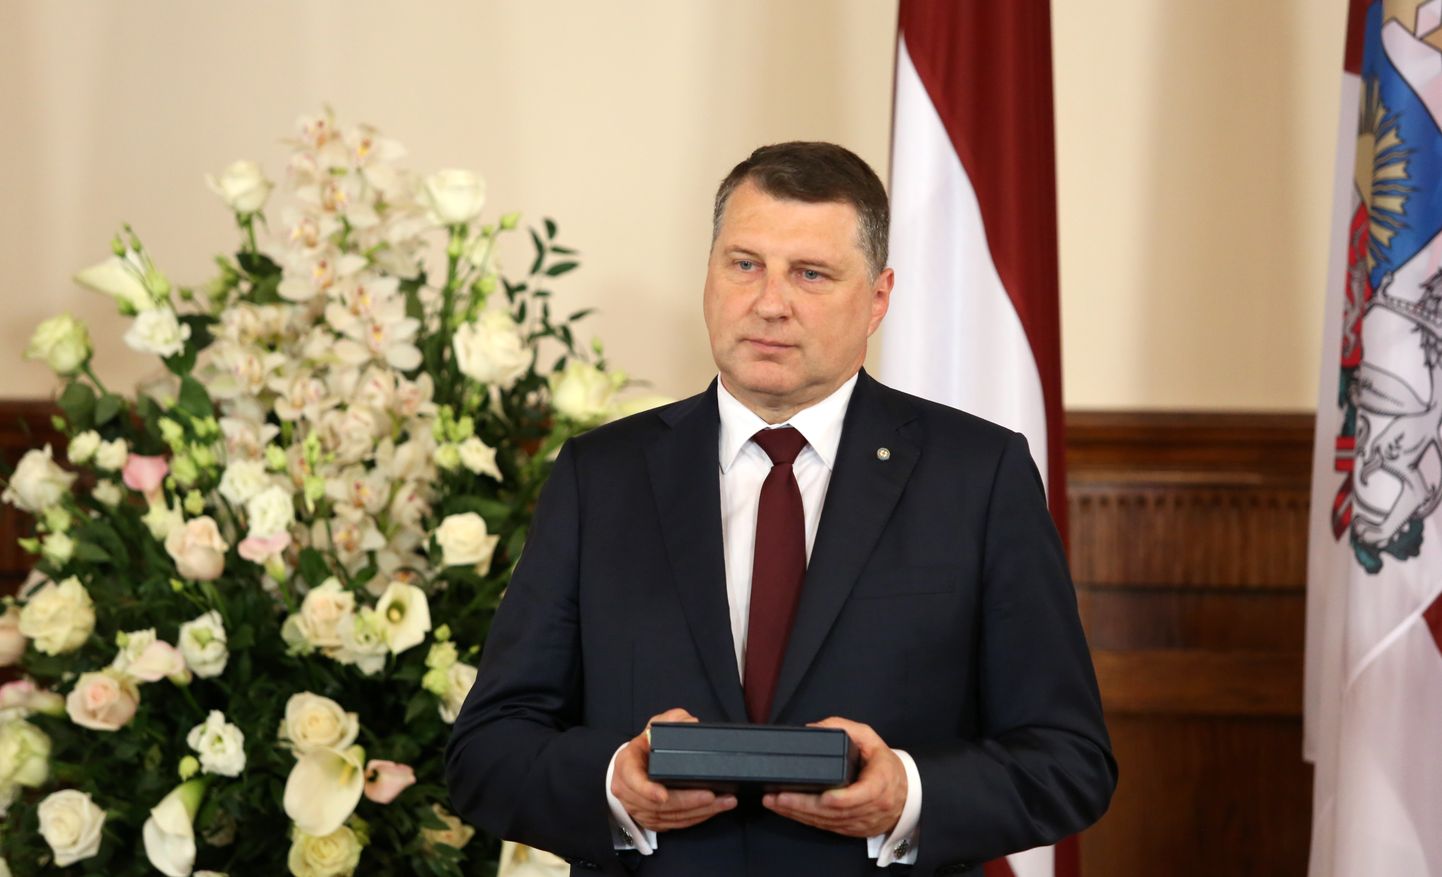 Valsts prezidents Raimonds Vējonis saka uzrunu Valsts augstāko apbalvojumu pasniegšanas ceremonijā Rīgas pilī.